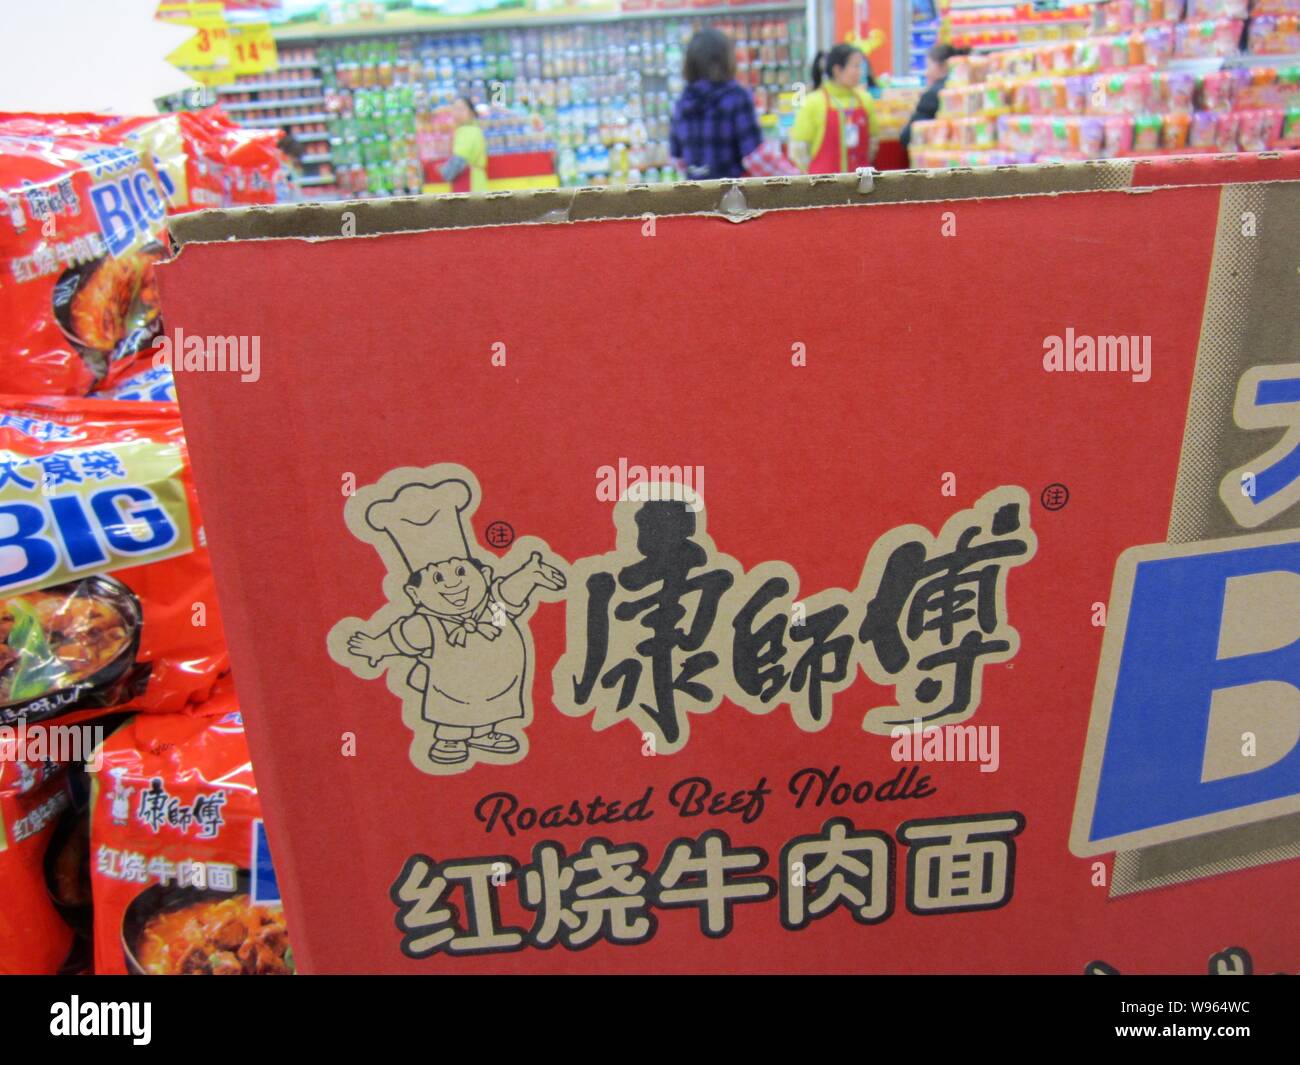 ---- Pakete von Tingyi gebratenem Rindfleisch Nudel sind für den Verkauf in einem Supermarkt in Nantong, China Jiangsu Provinz, 27. März 2012. Tingyi (Cayman Stockfoto